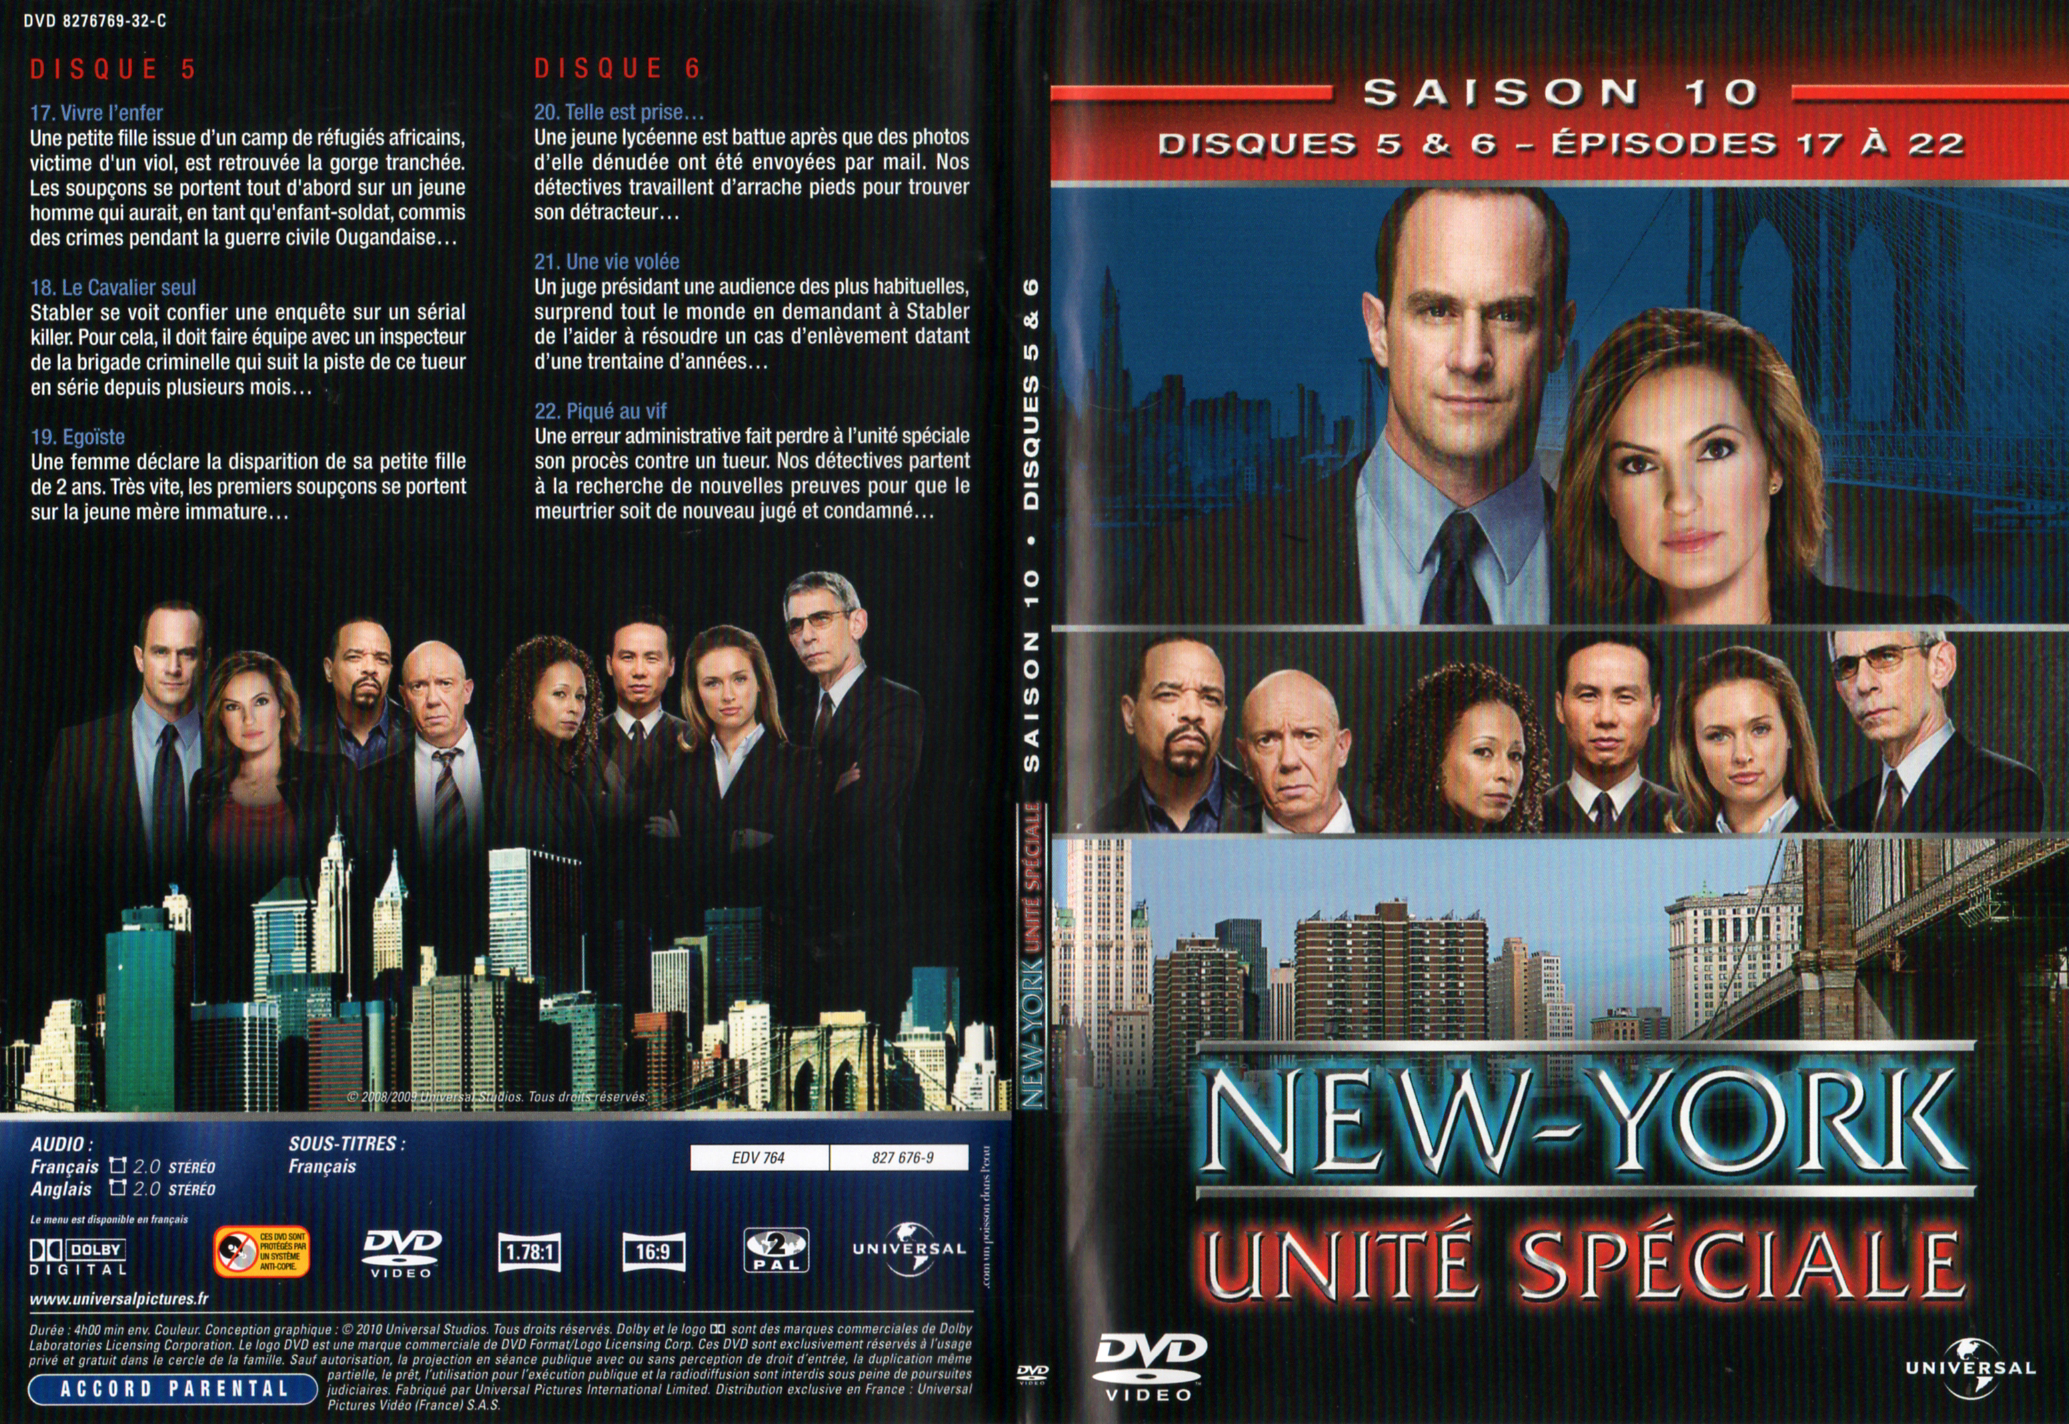 Jaquette DVD New York unit spciale saison 10 DVD 3